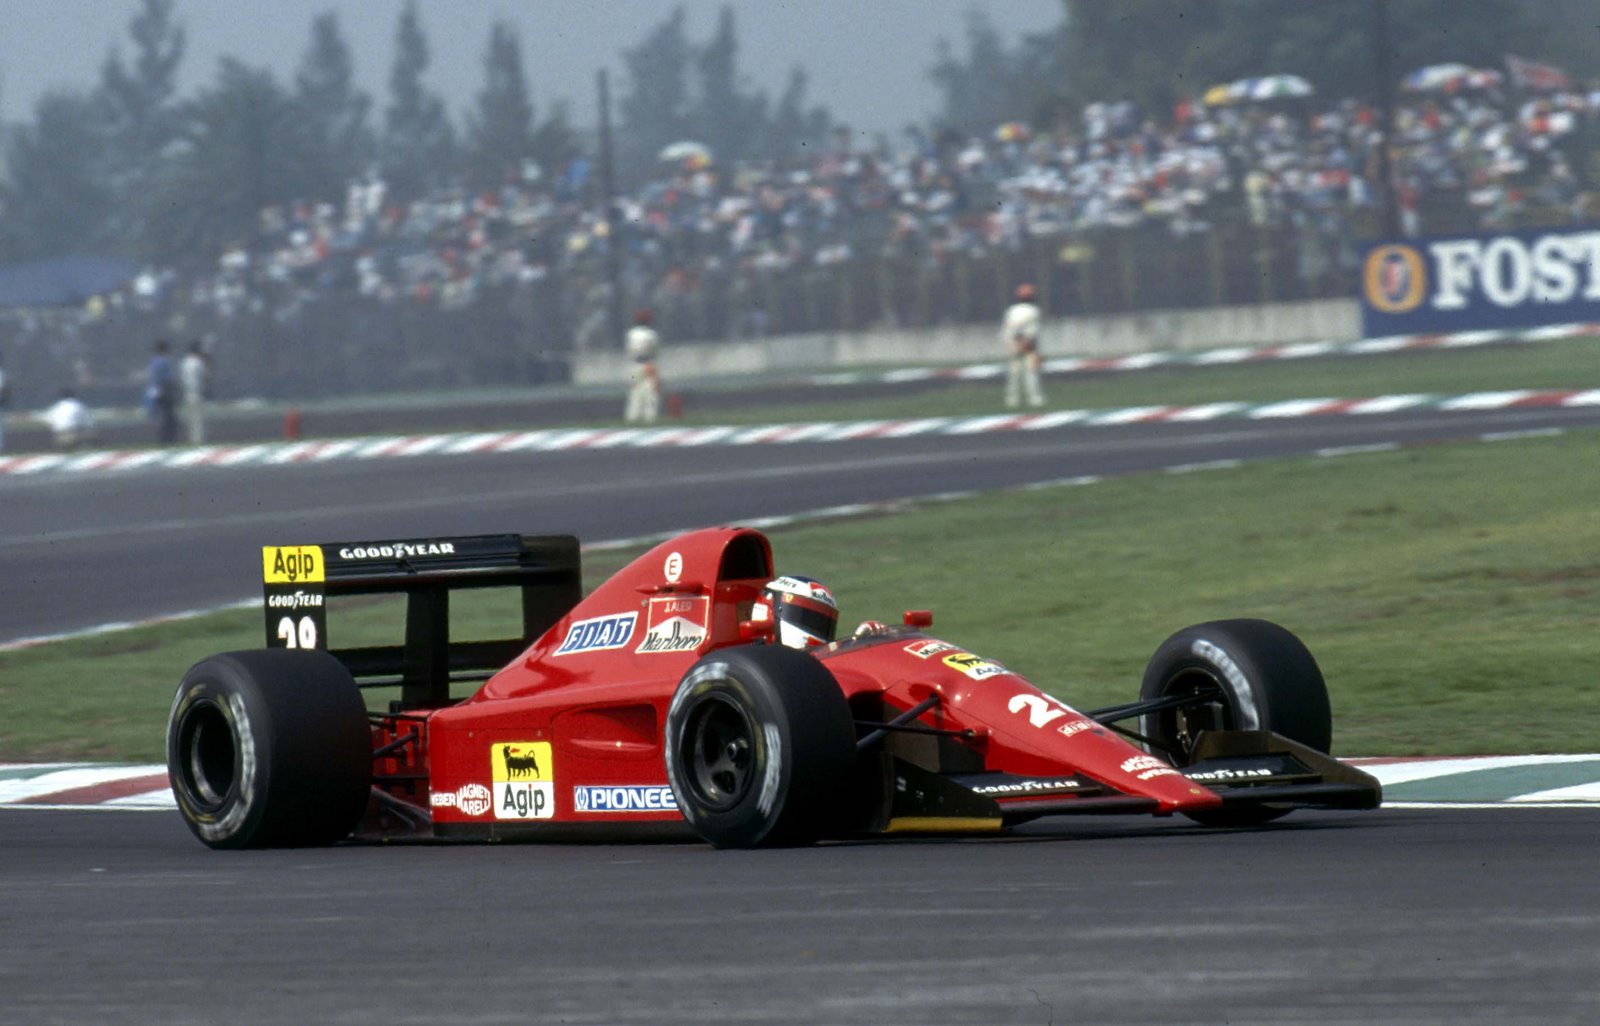 [Jean+Alesi+Ferrari+f1+3.jpg]